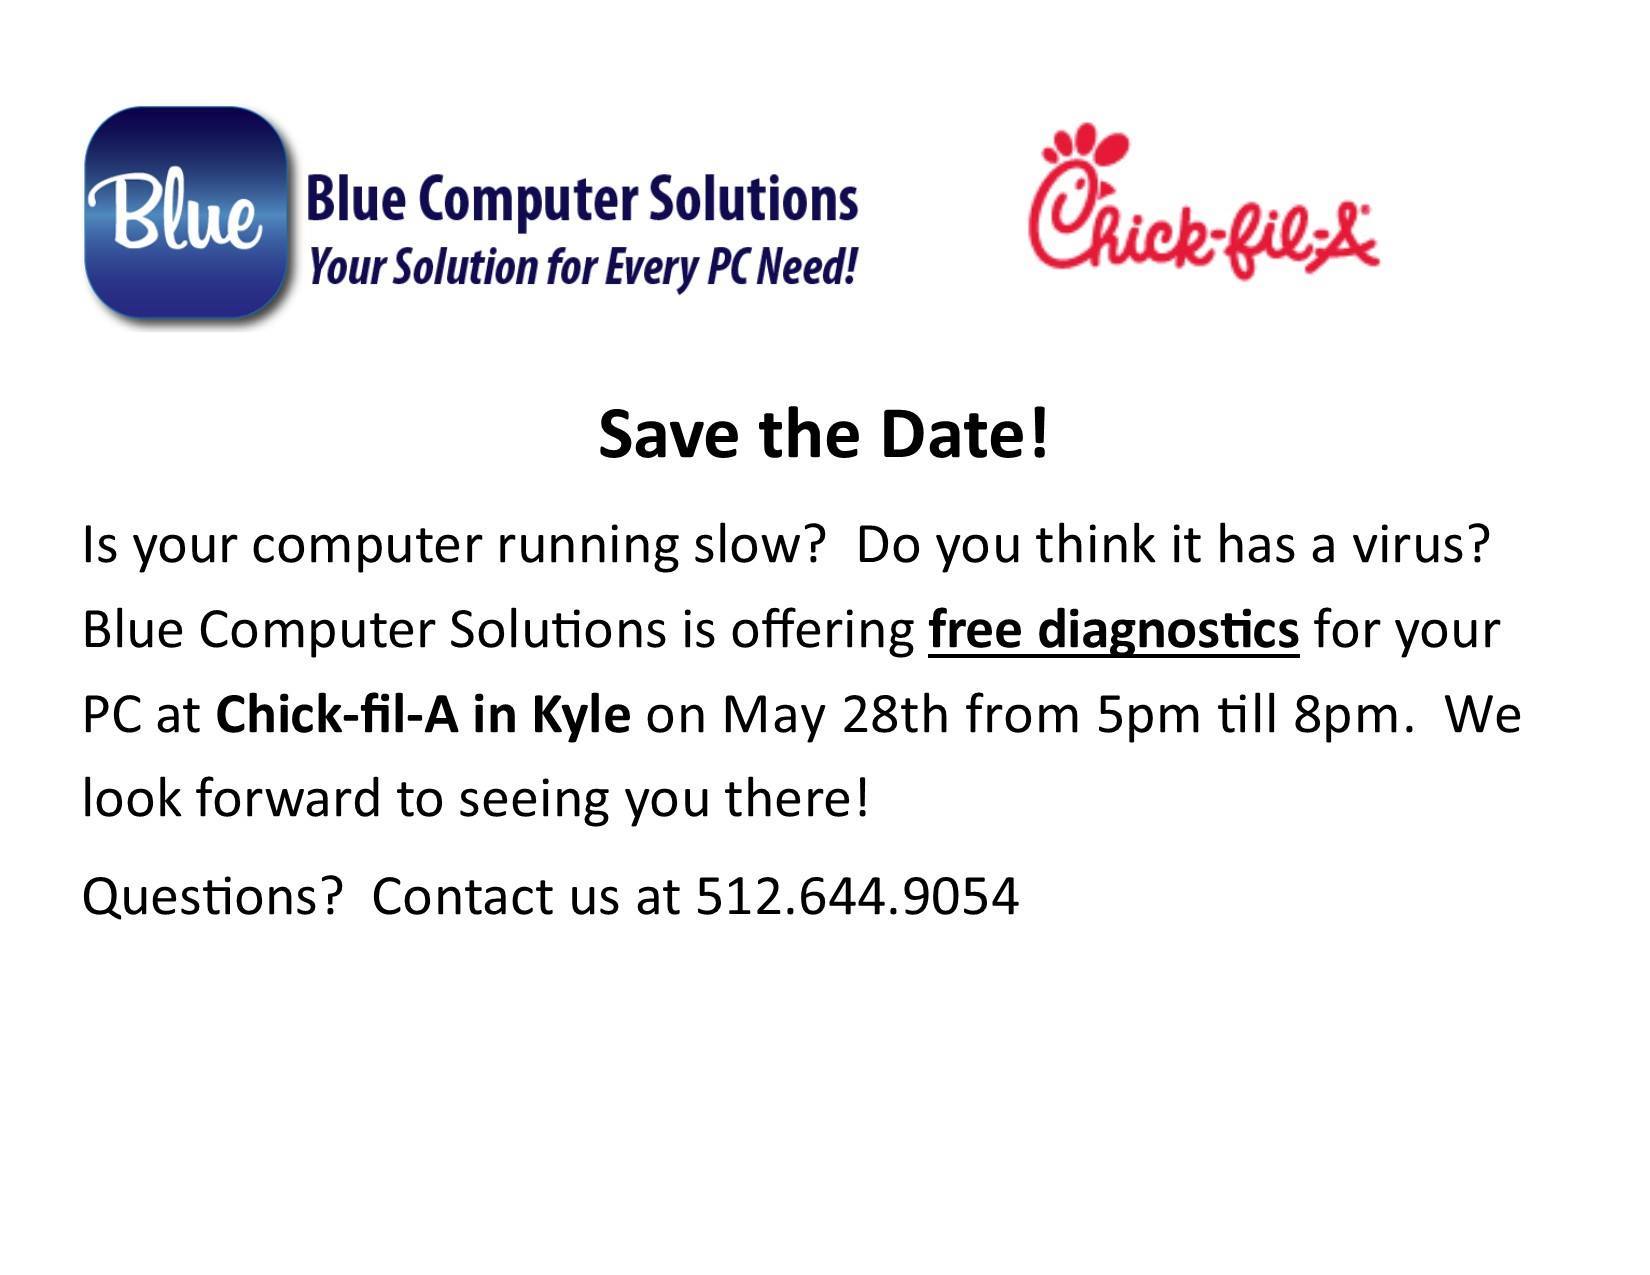 Blue Computers FREE Computer Diagnostics Event @ Chick-Fil-A